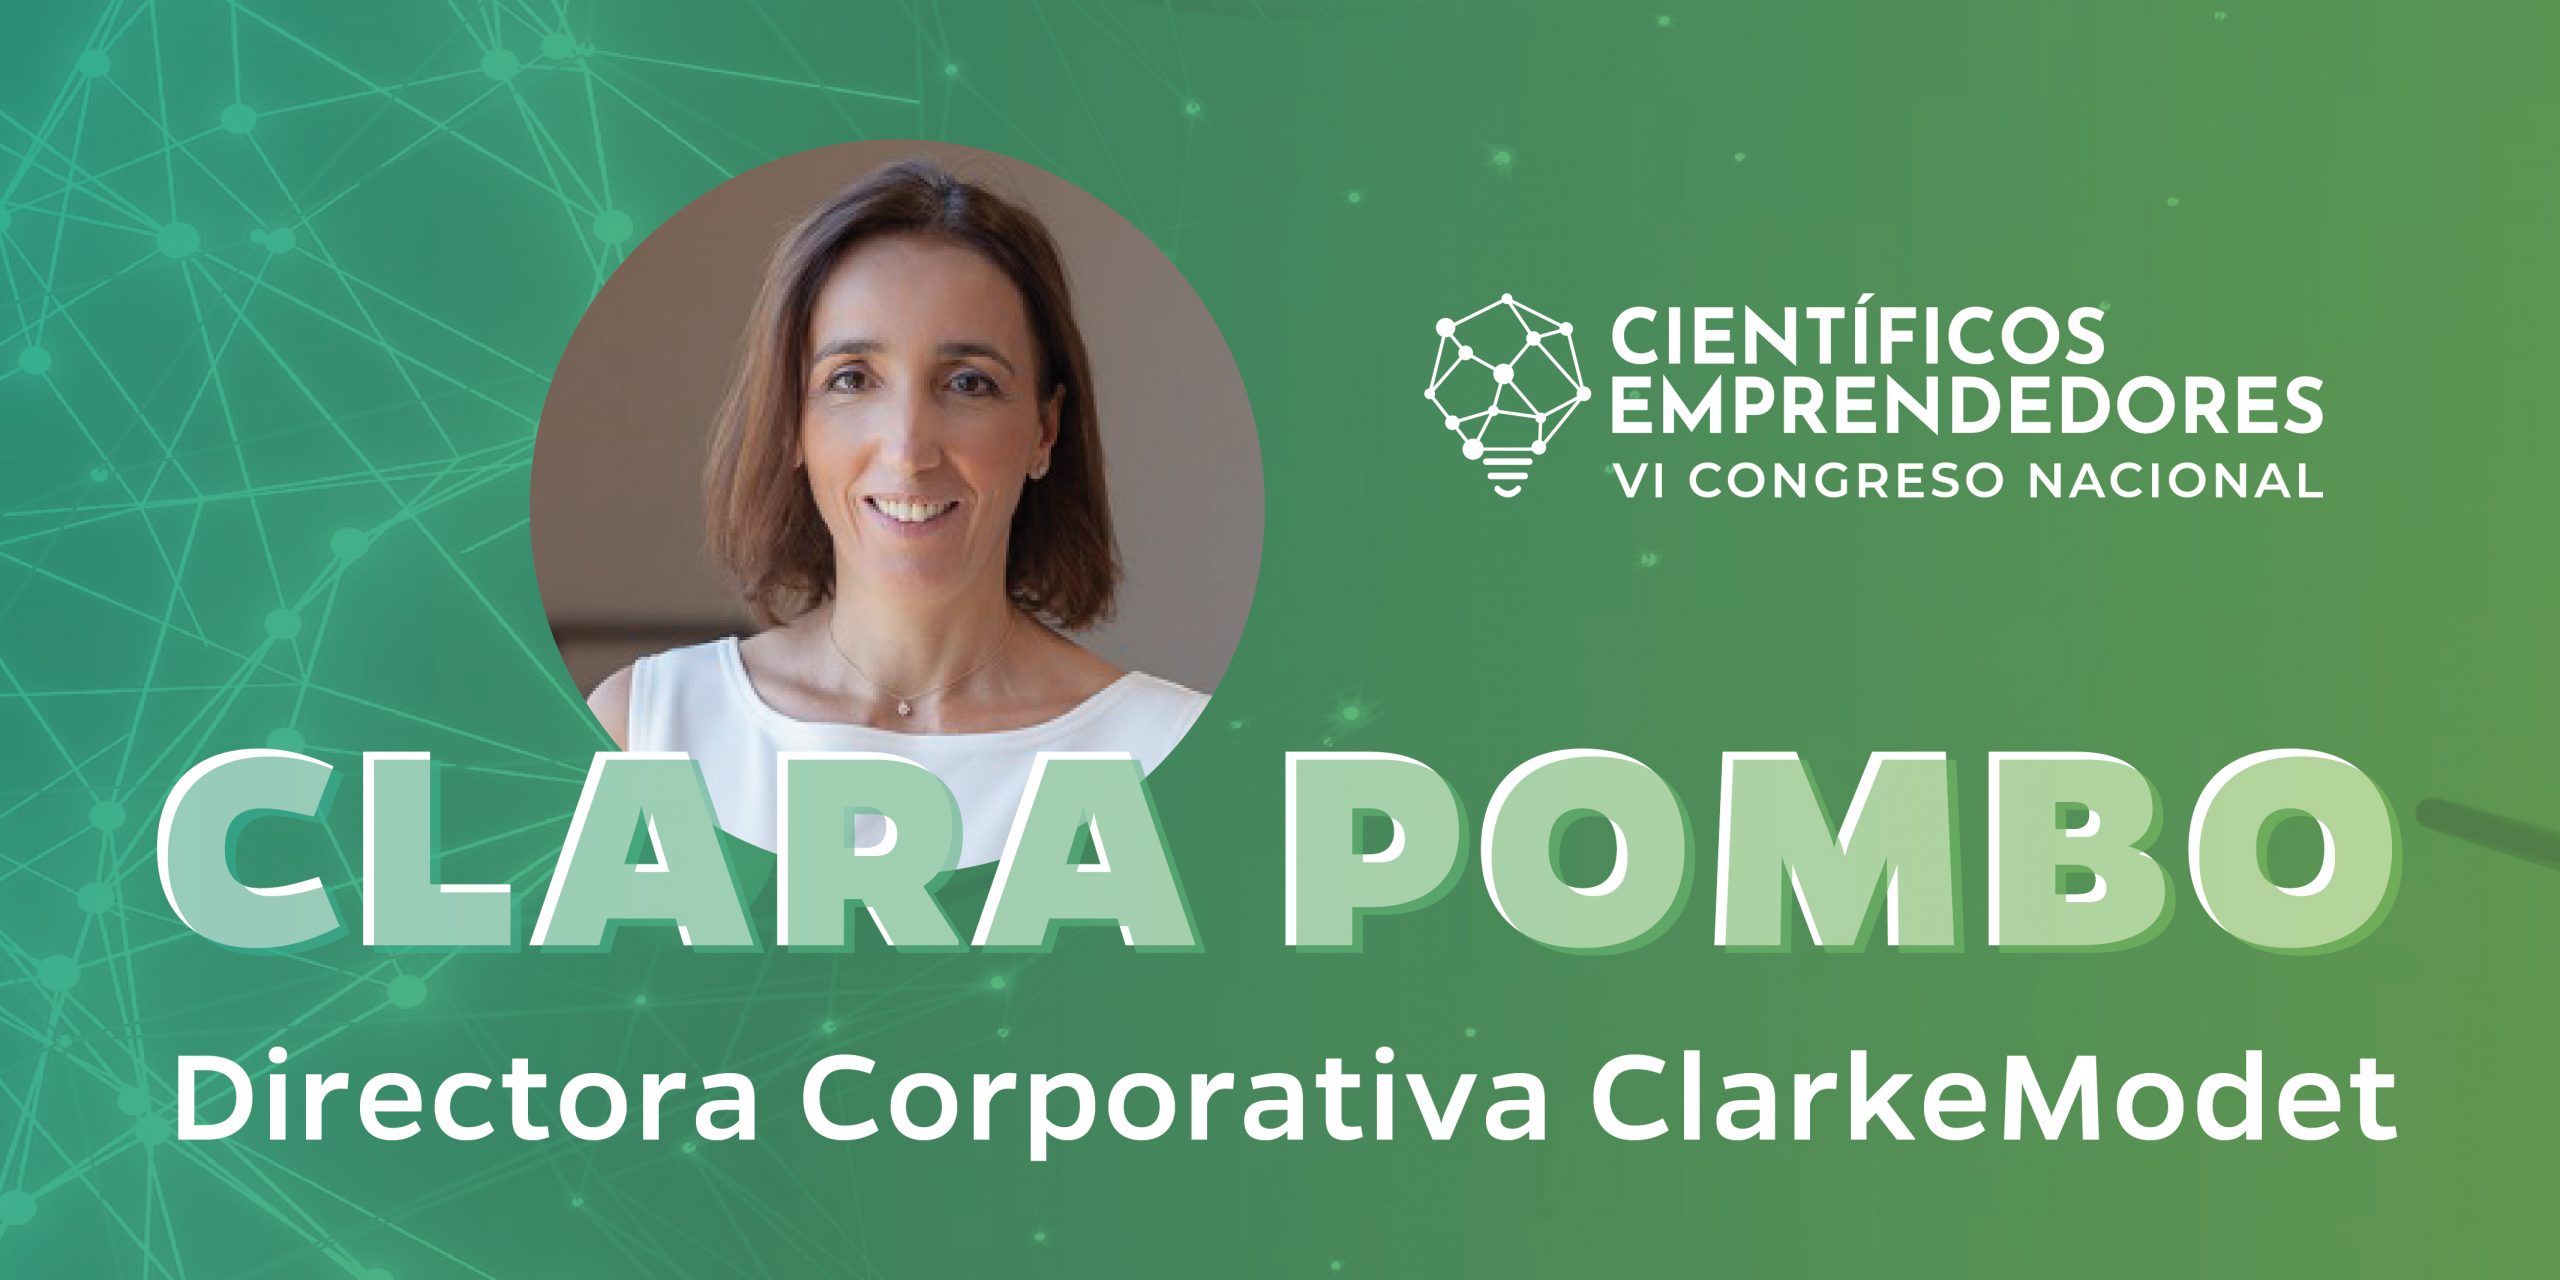 Clara Pombo, ponente del Congreso Nacional de Científicos Emprendedores, en el TOP100 de mujeres inversoras más activas del ecosistema de startup español